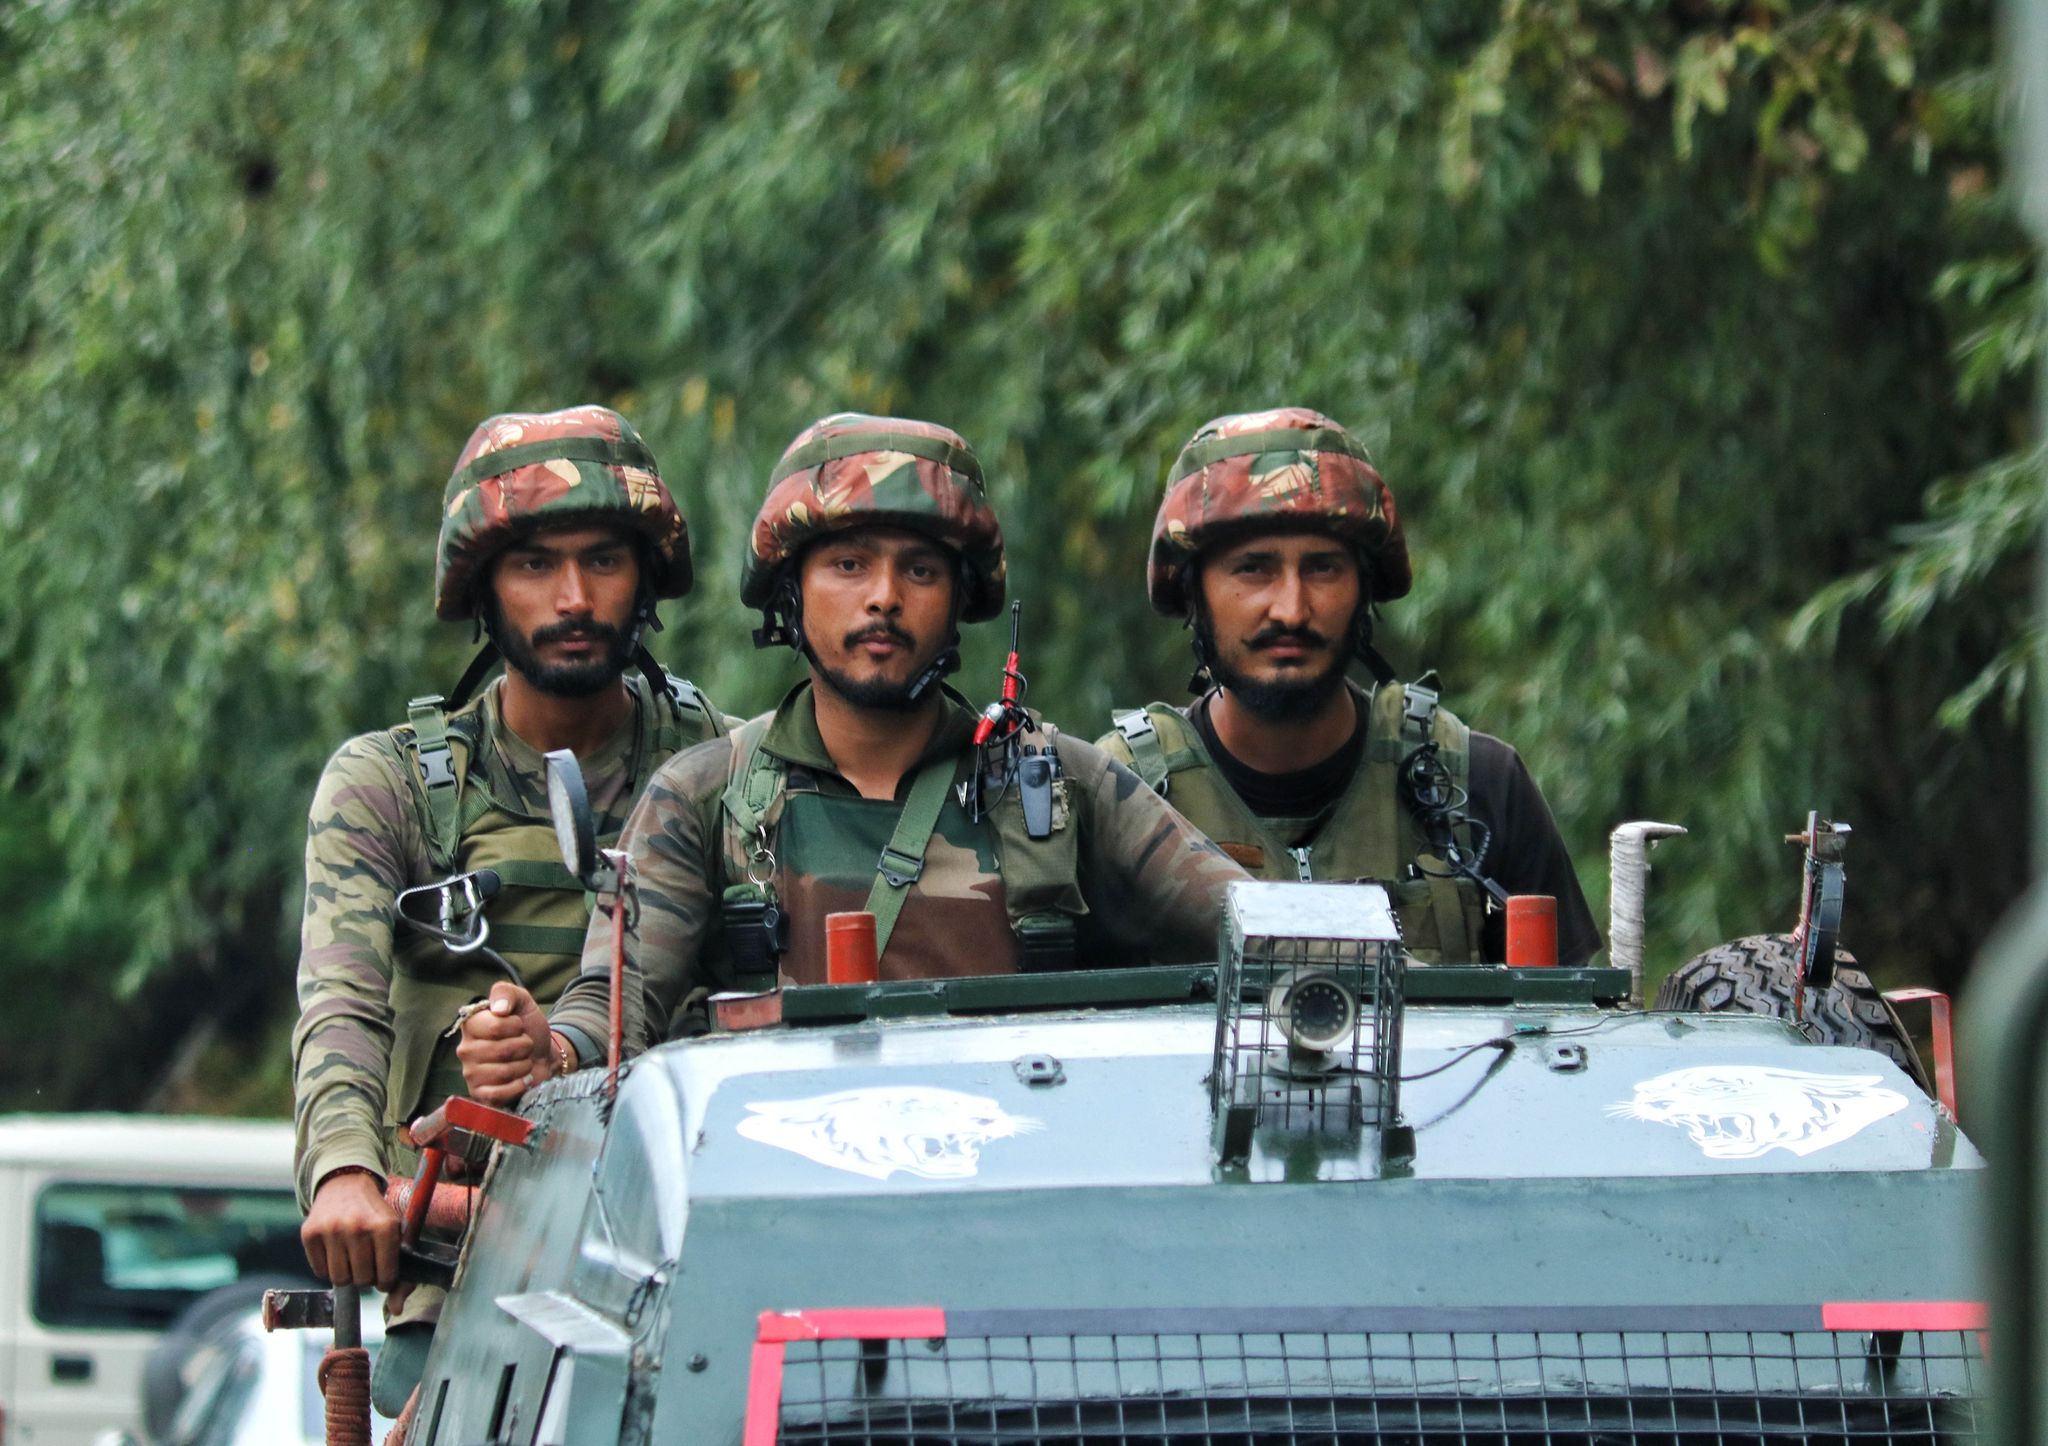 Indien: Sicherheitskräfte töten 29 maoistische Rebellen